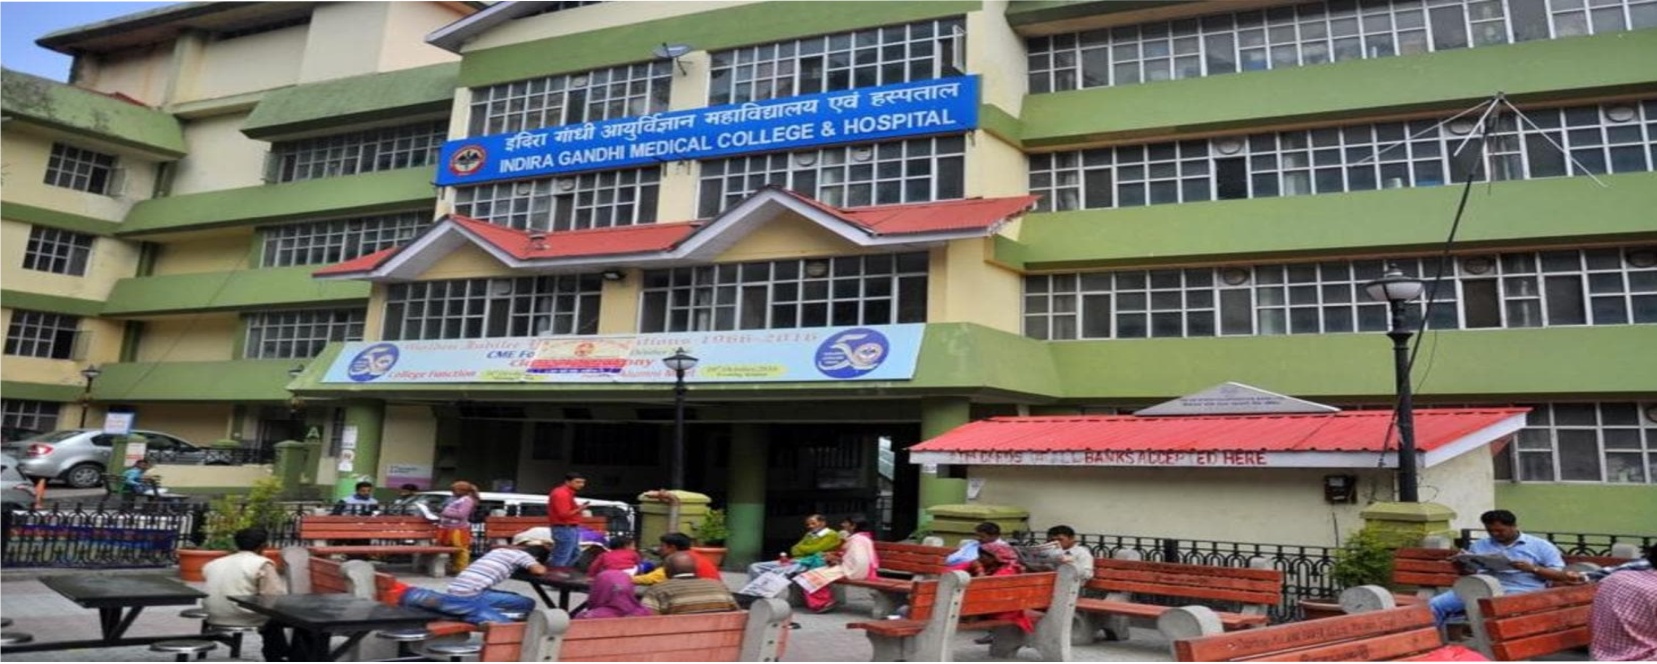 Indira Gandhi Medical College and Hospital, Shimla